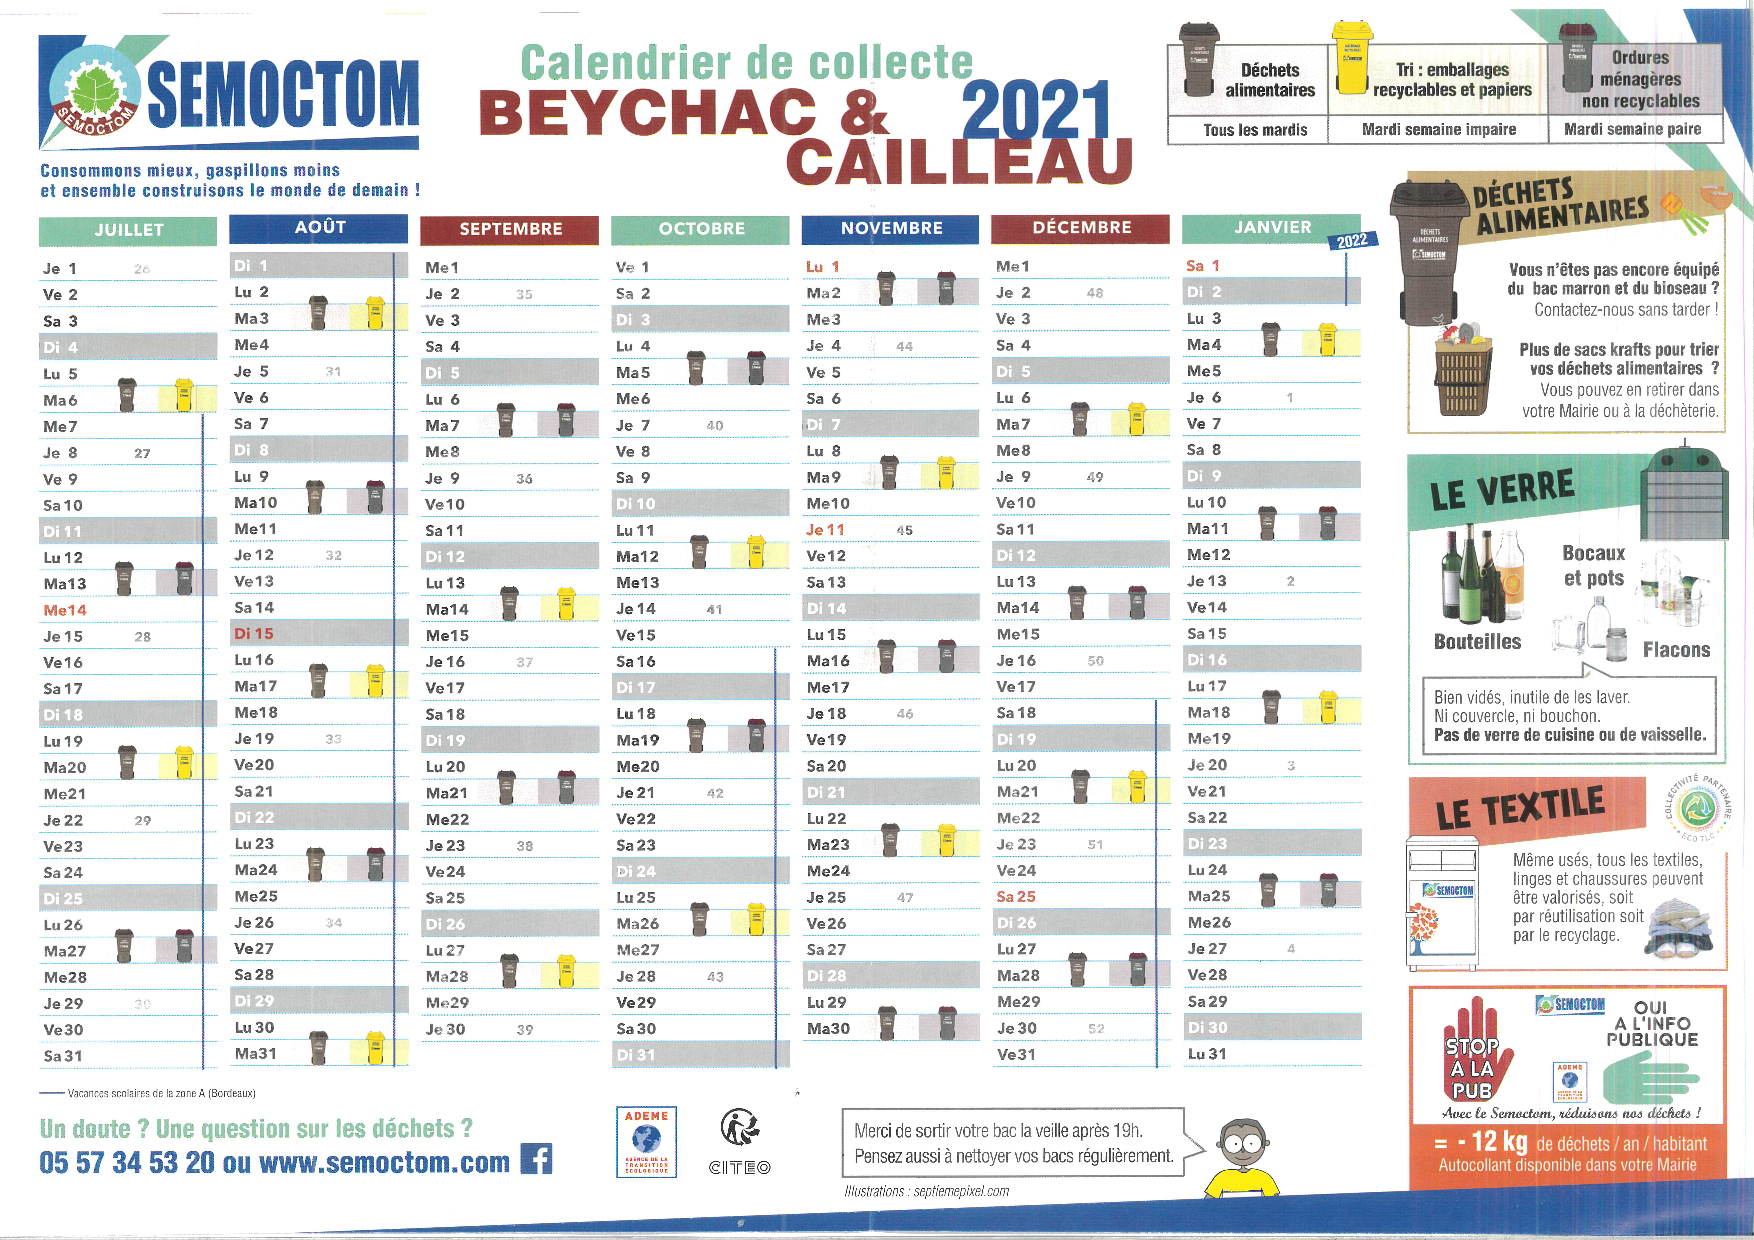 Smicval Calendrier De Collecte 2022 Collecte des ordures ménagères et tri sélectif – Beychac & Cailleau